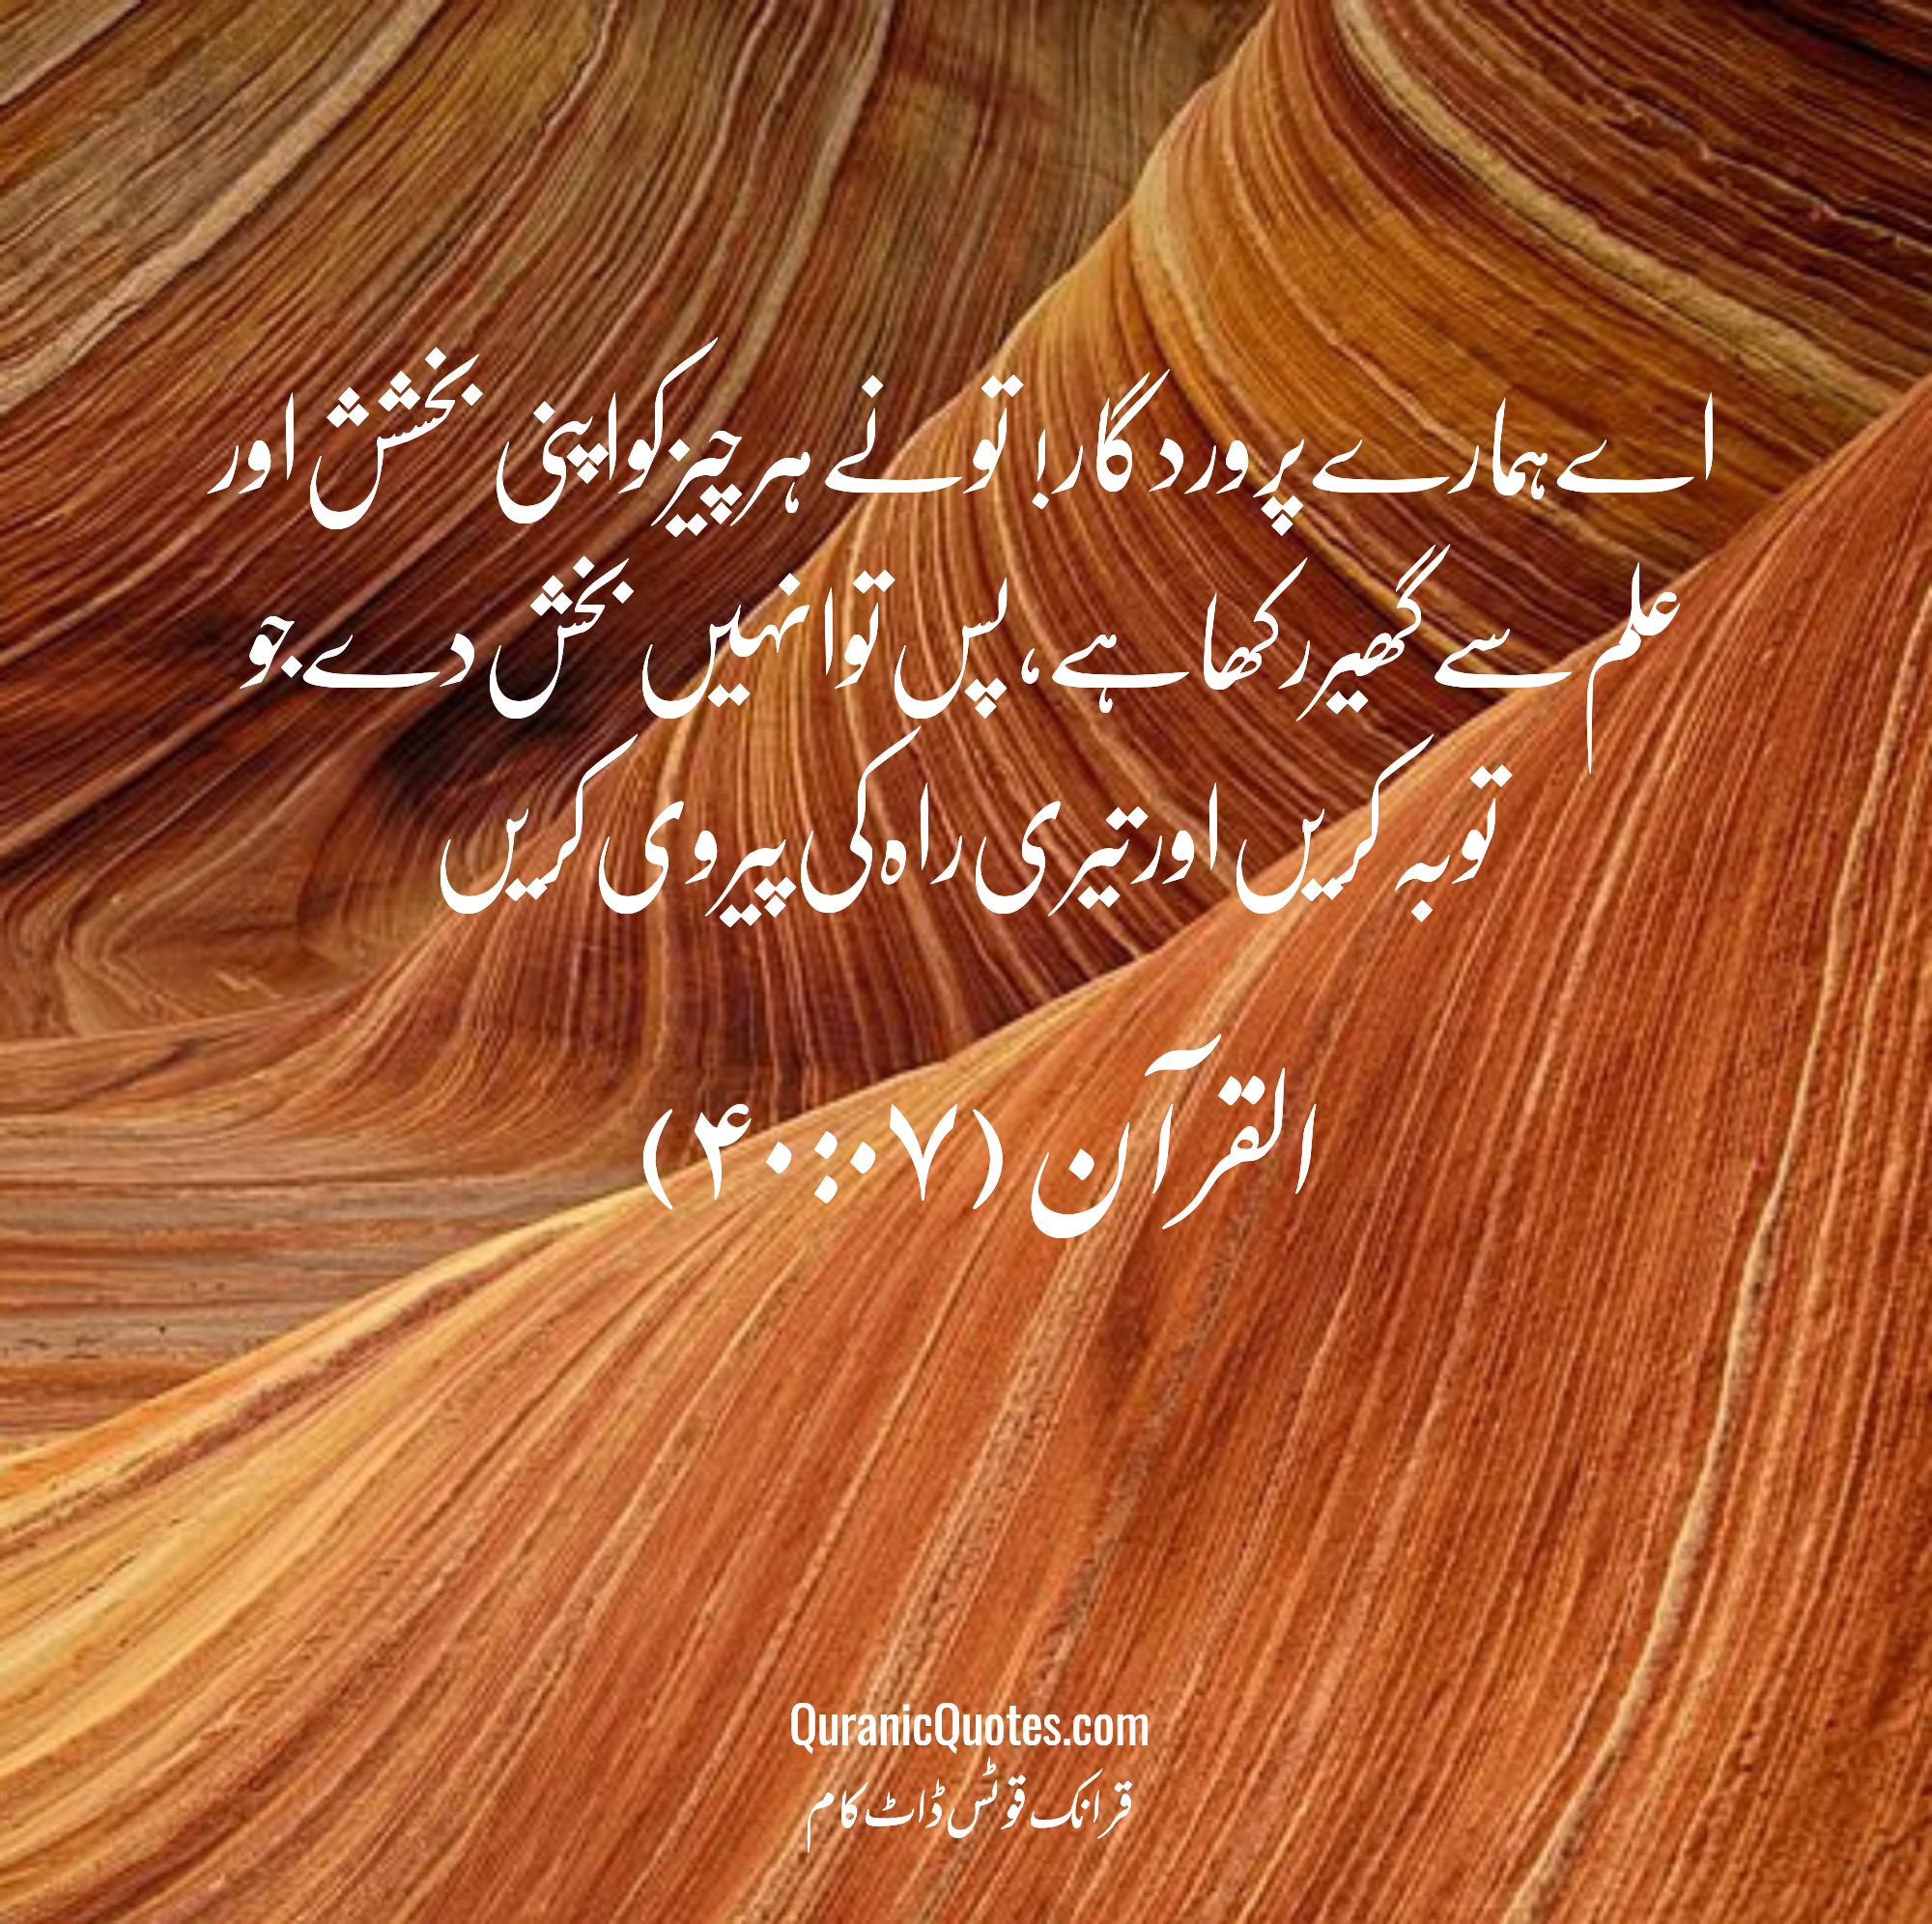 quran-quotes-urdu-40-07